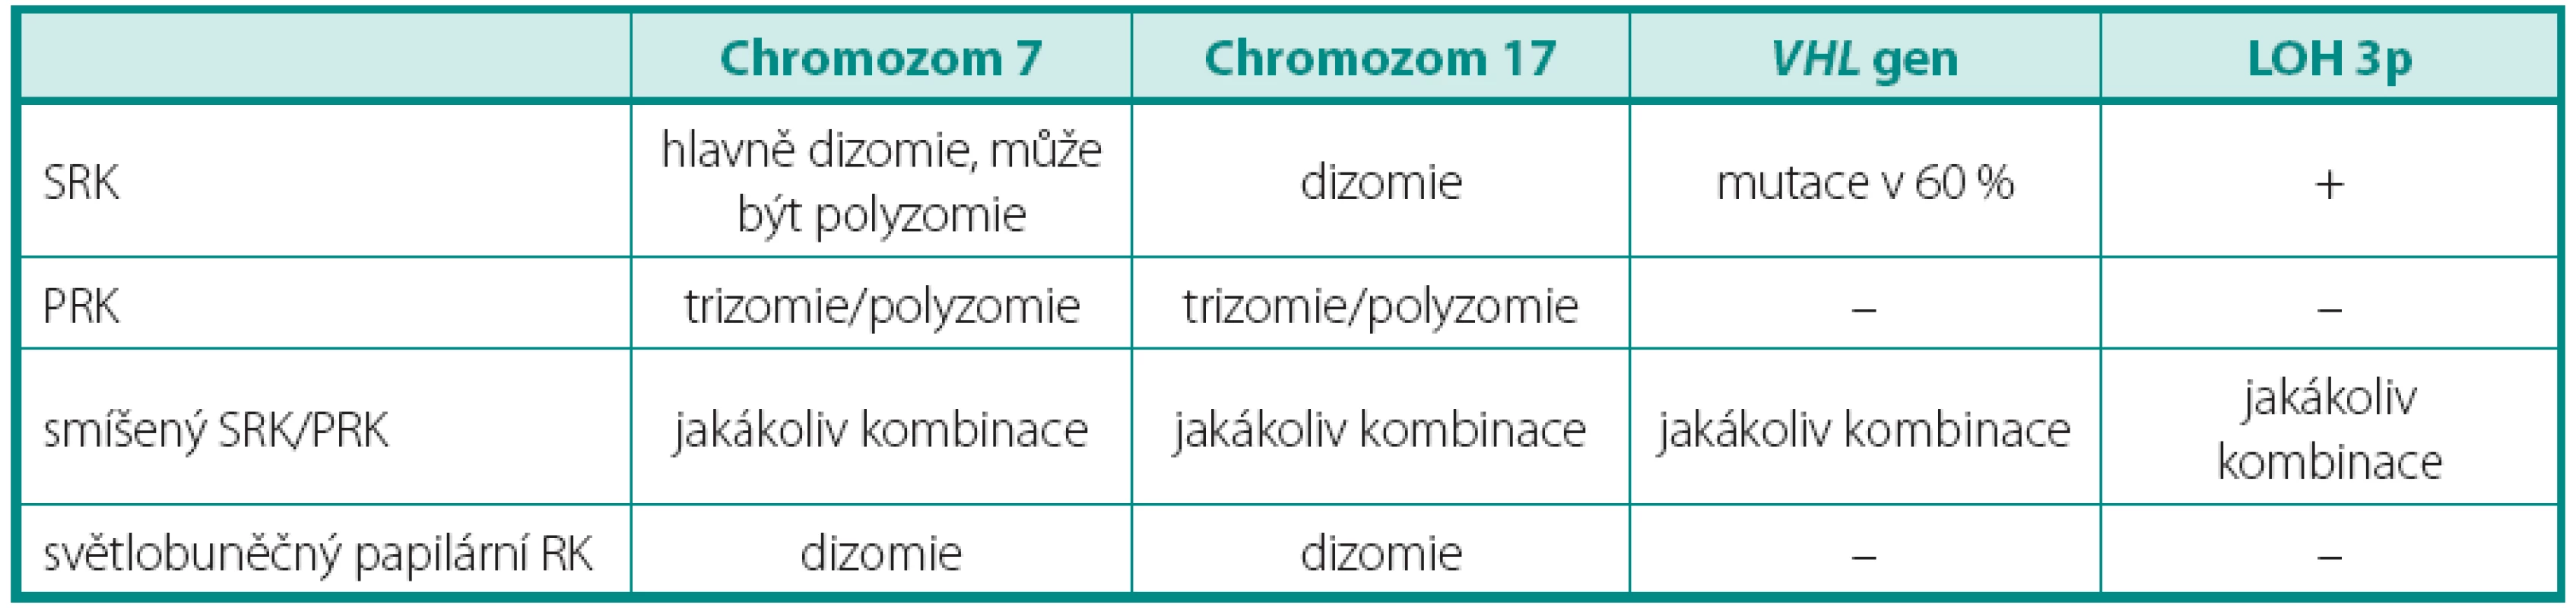 Genetický profil světlobuněčných nádorů
Table 1. Genetic profile of tumors composed of clear cells